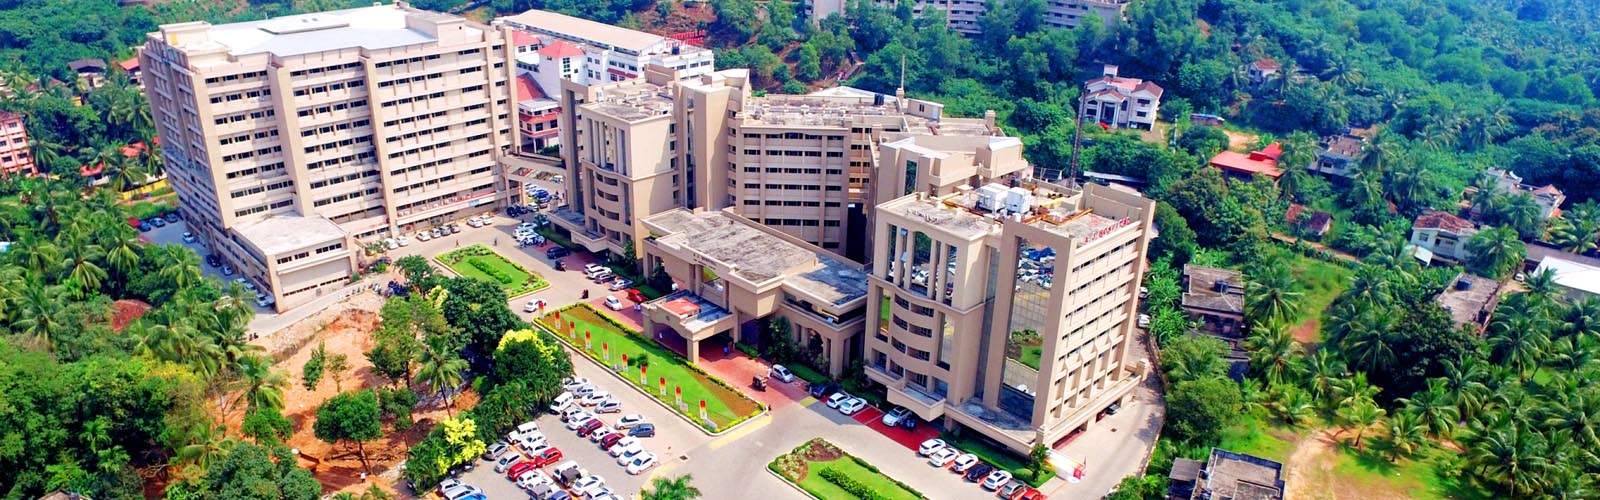 AJ Institute of Dental Sciences Mangalore